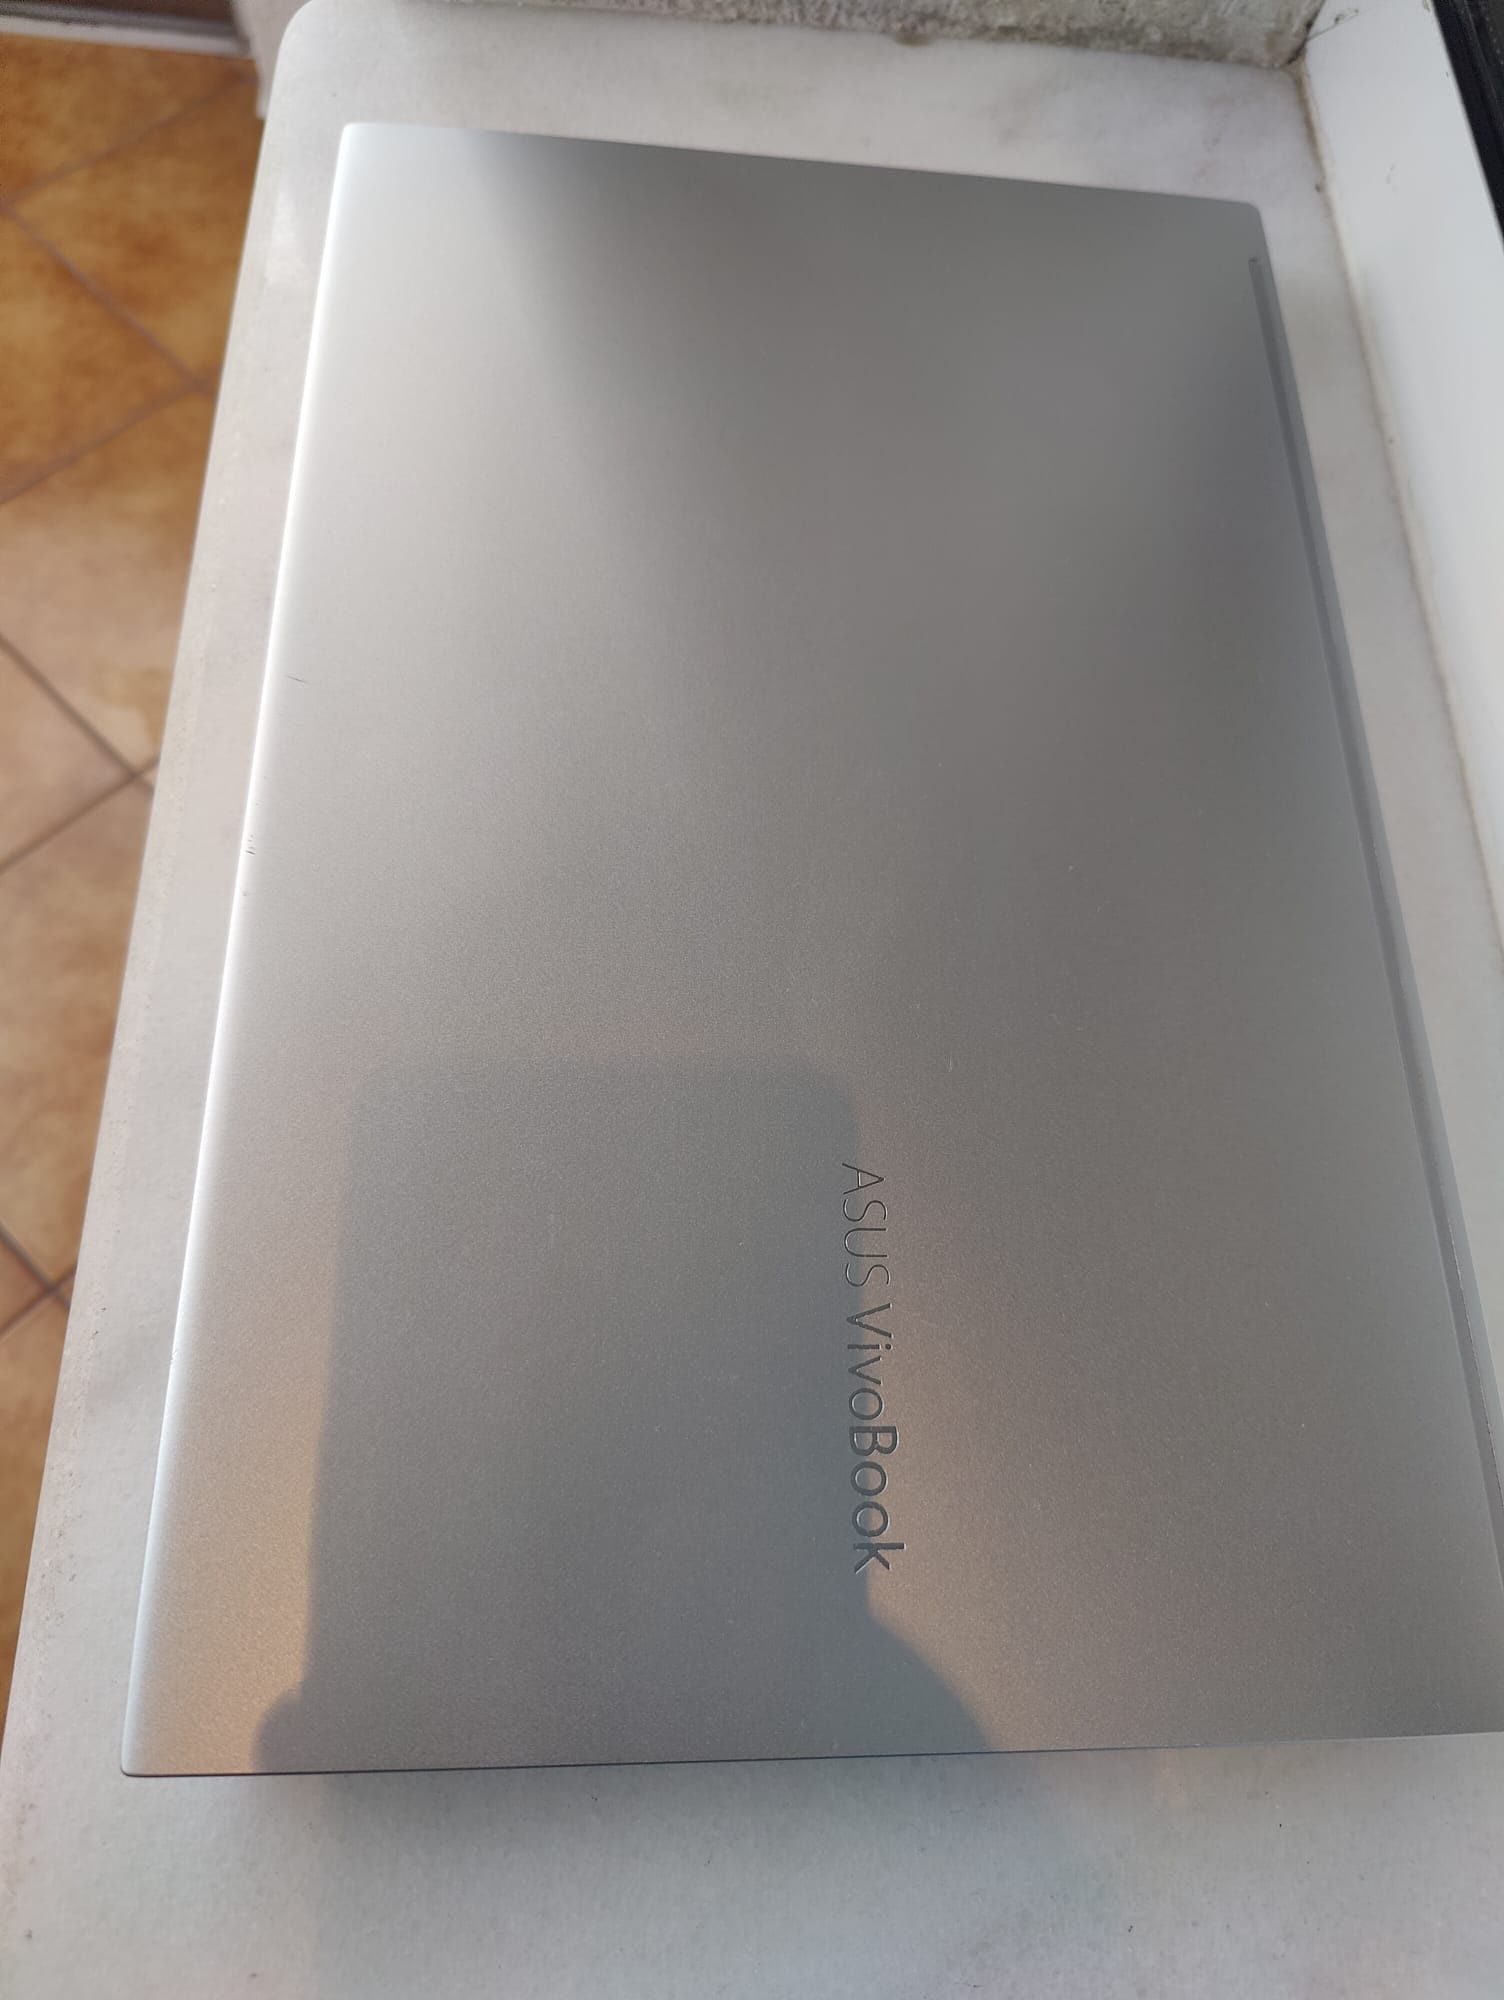 Asus Vivobook OLED